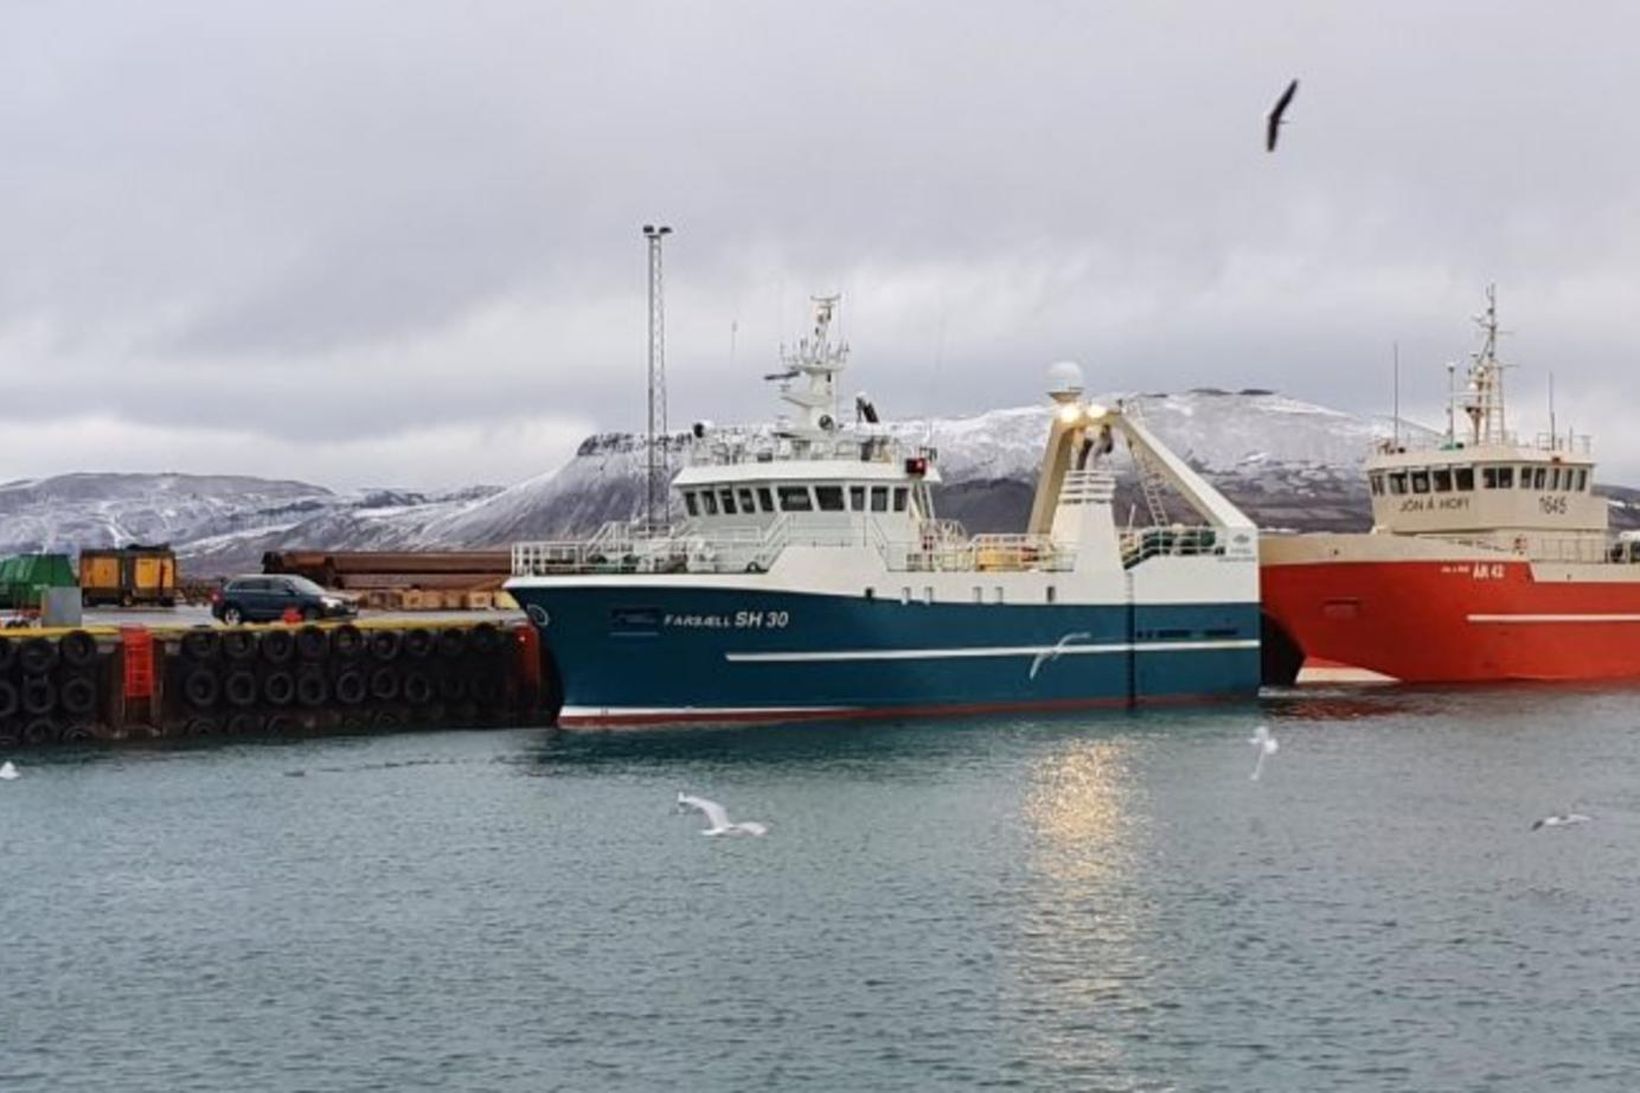 Farsæll landaði 54 tonnum í Grundarfirði eftir sex daga túr.